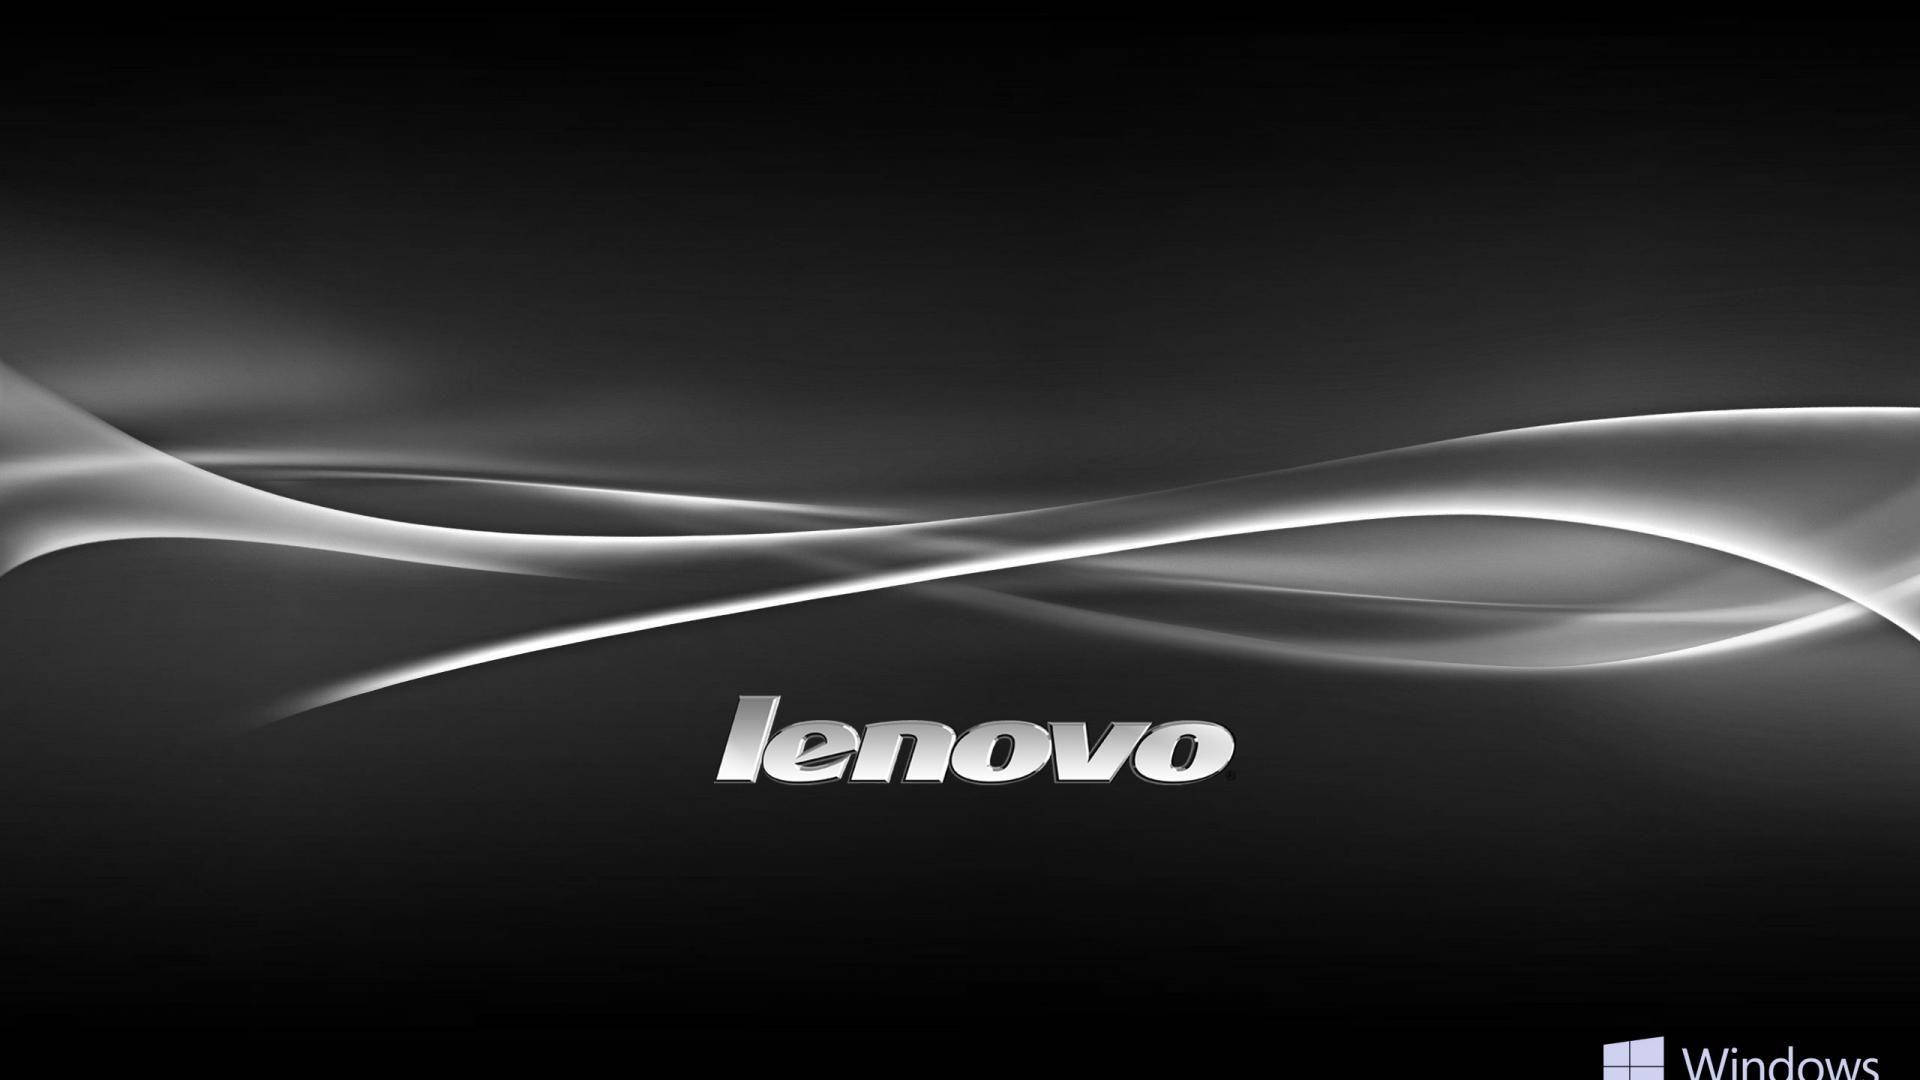 Windowslogo Lenovo Hd Kan Användas Som Bakgrundsbild På Din Dator Eller Mobiltelefon. Wallpaper